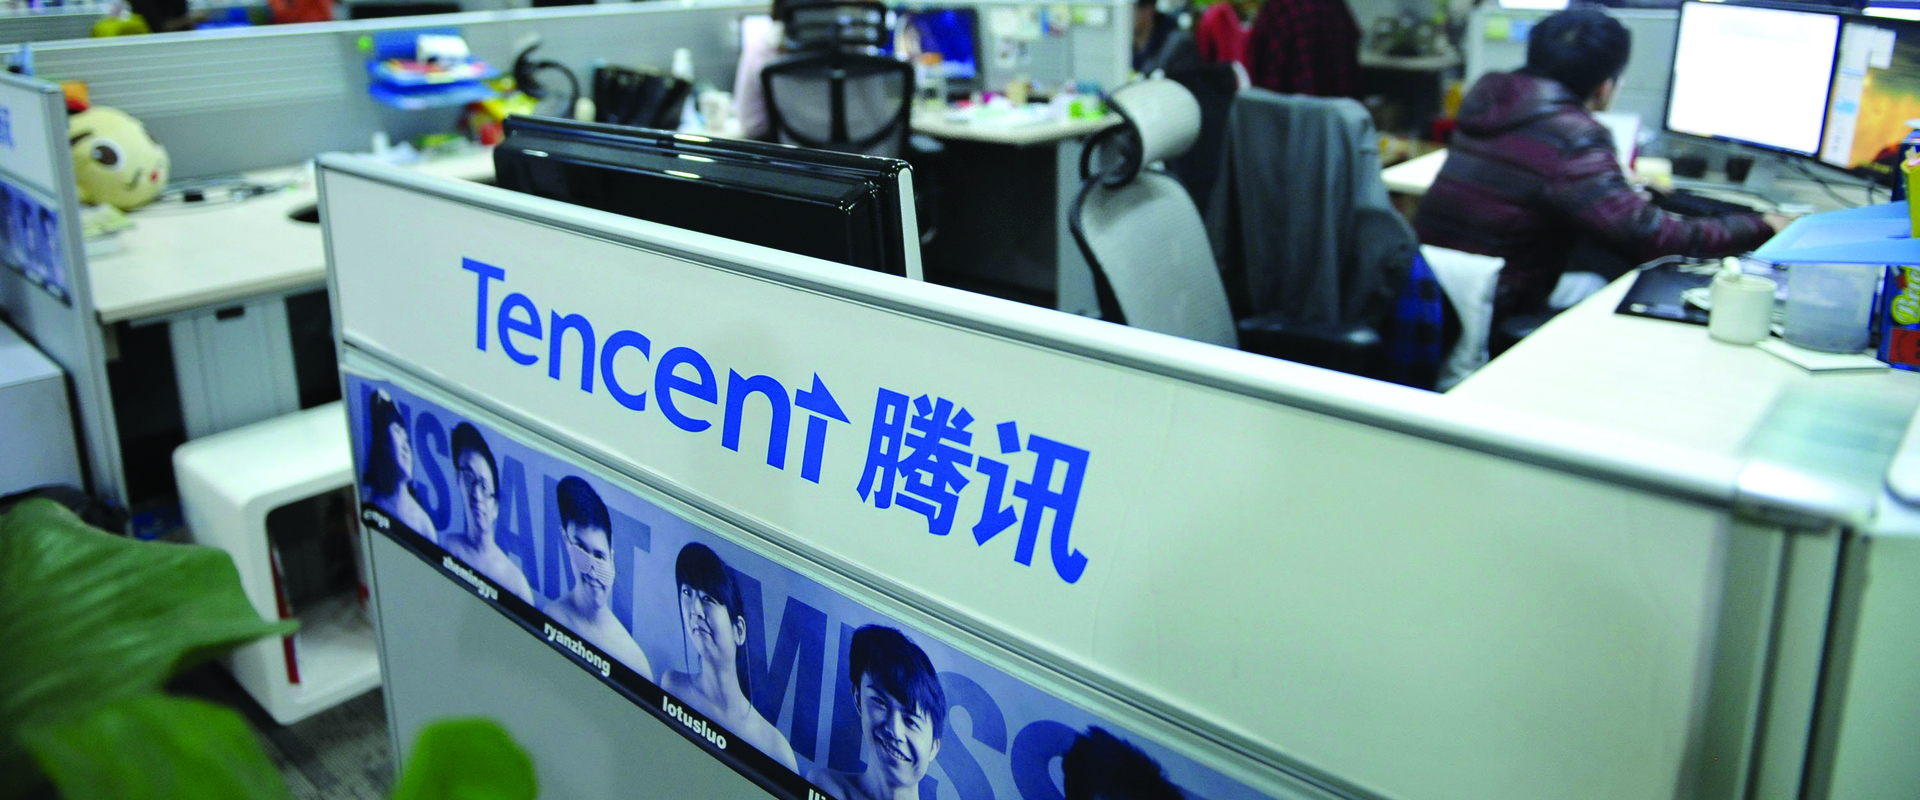 Tencent felemelkedése és esport uralma